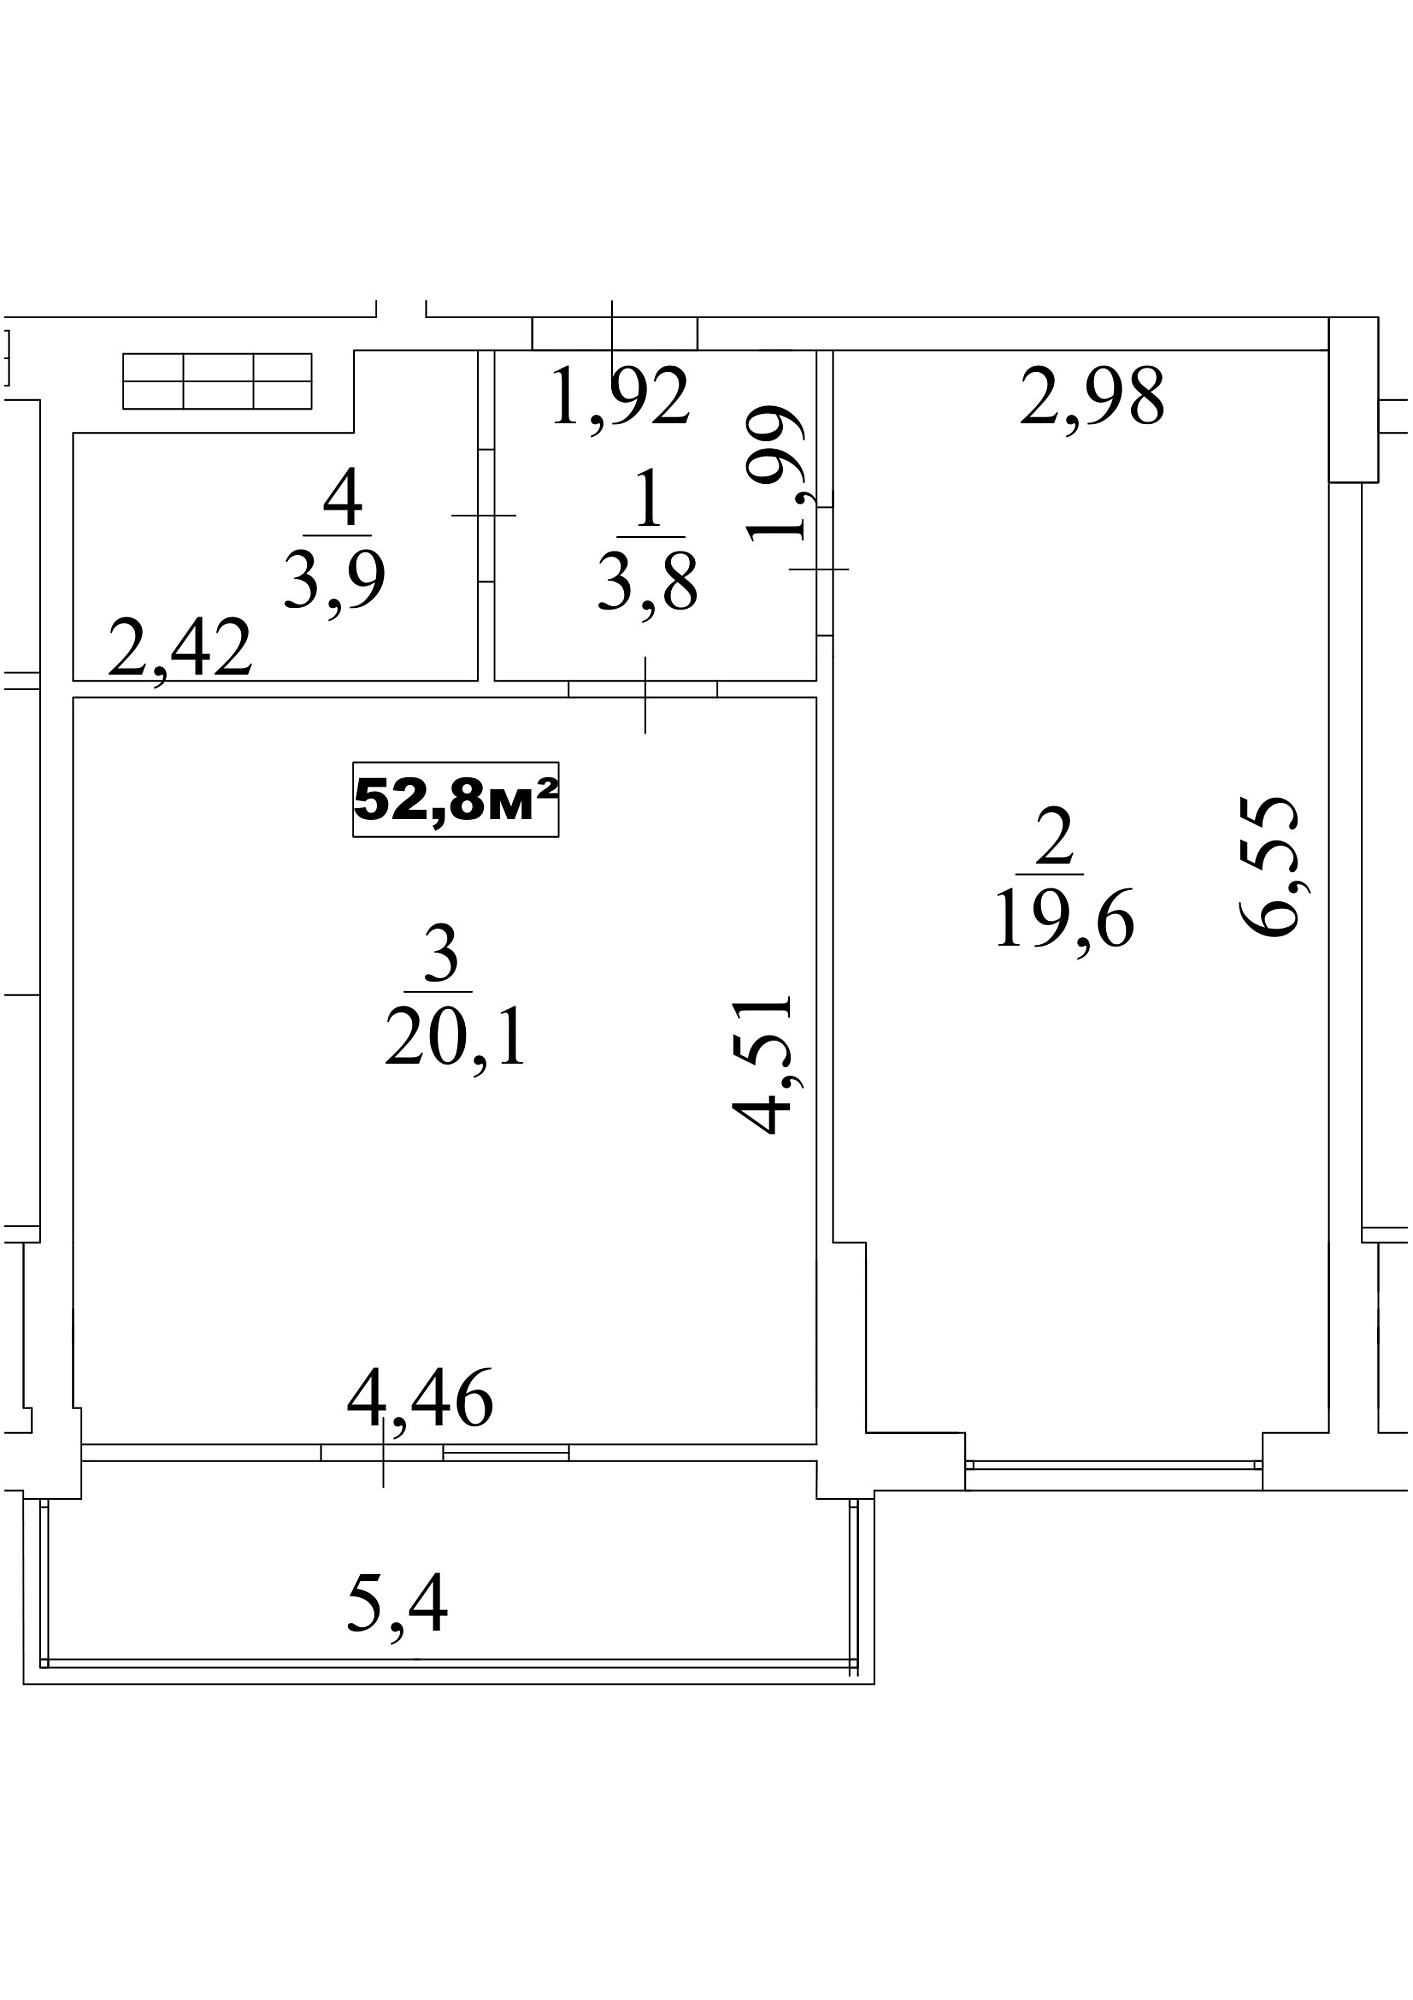 Планировка 1-к квартира площей 52.8м2, AB-10-07/00062.